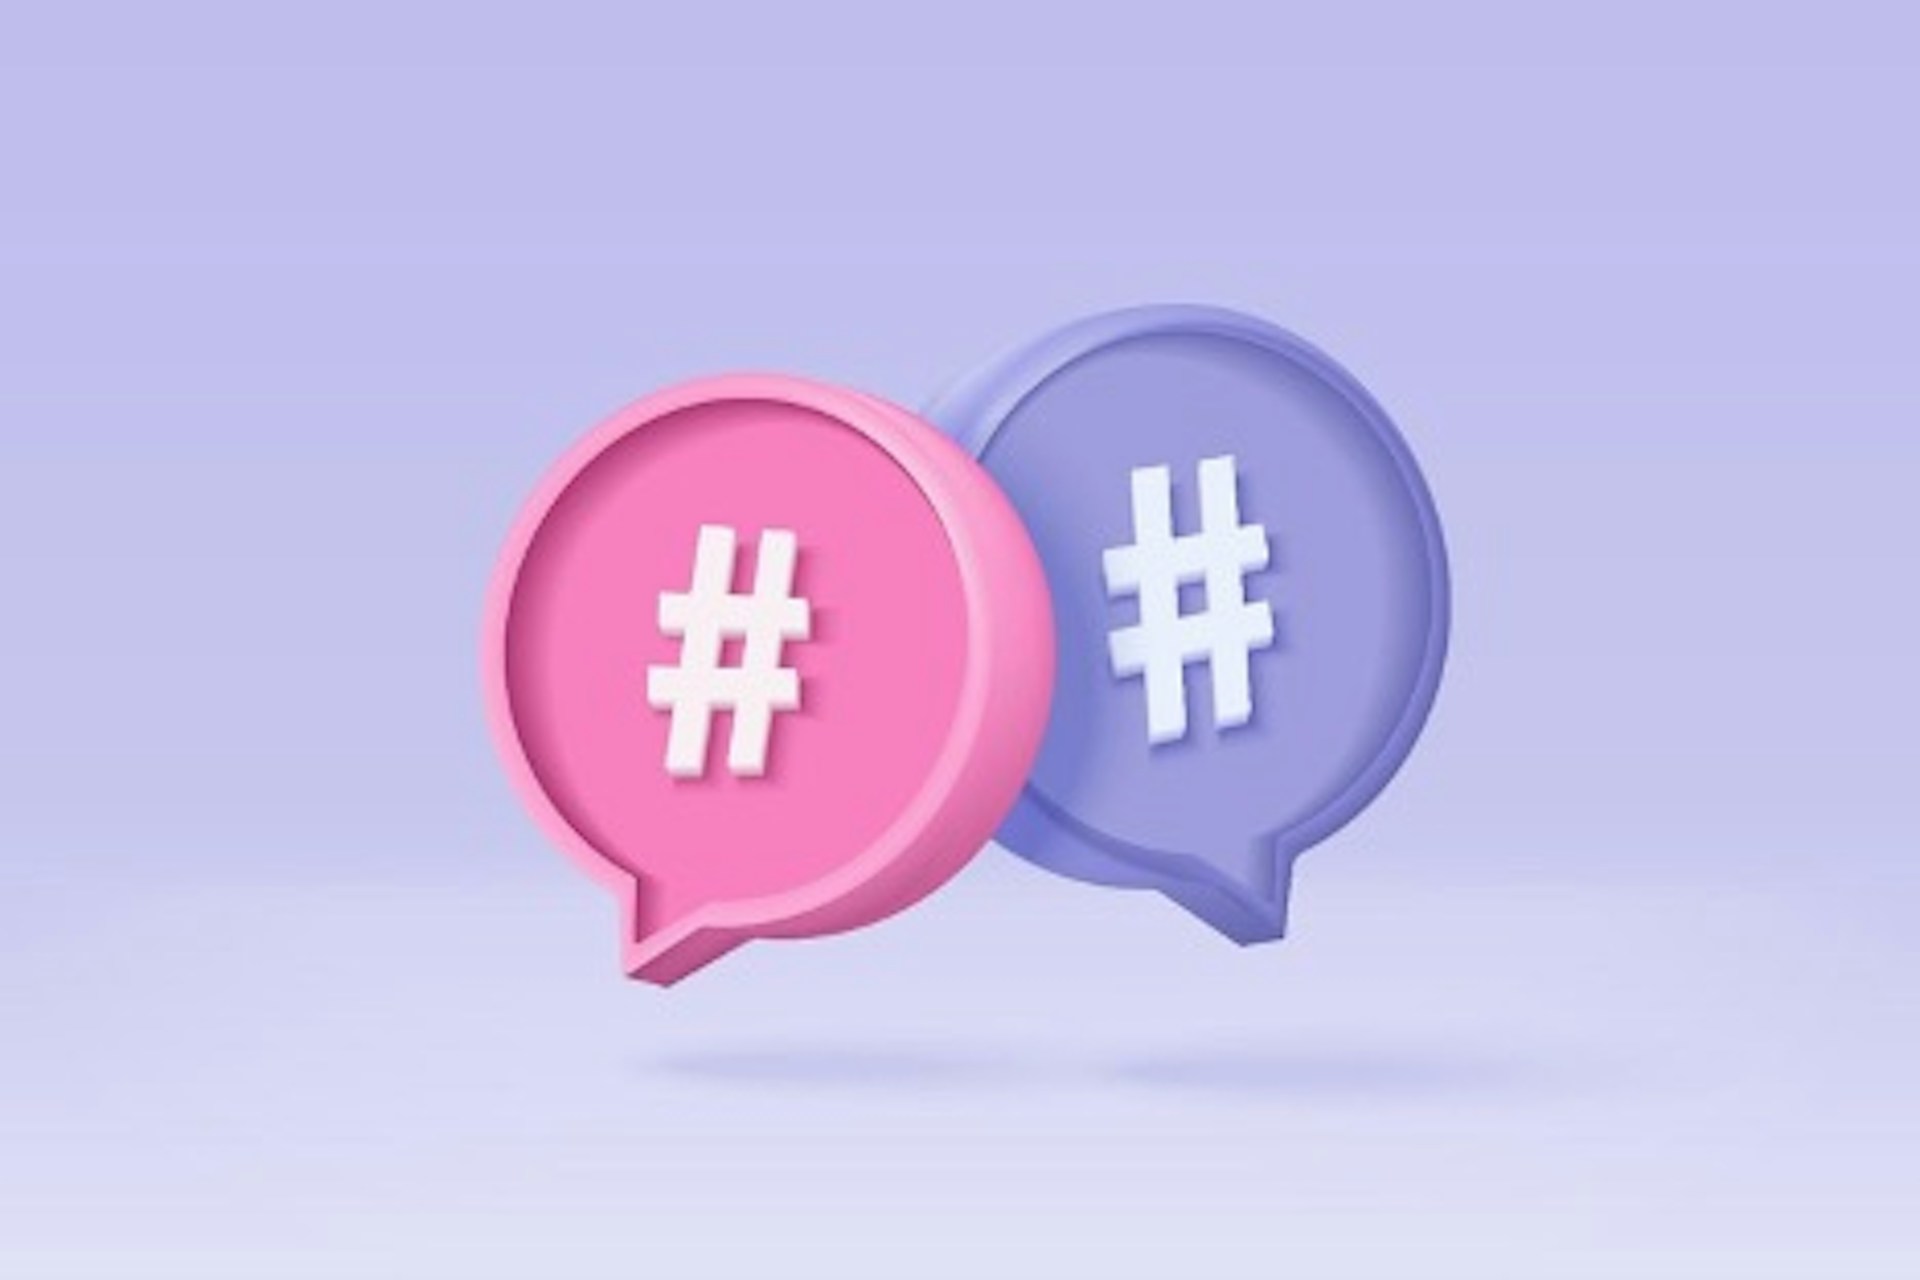 2 bulles de dialogues, une rose et une bleue, contenant un hashtag